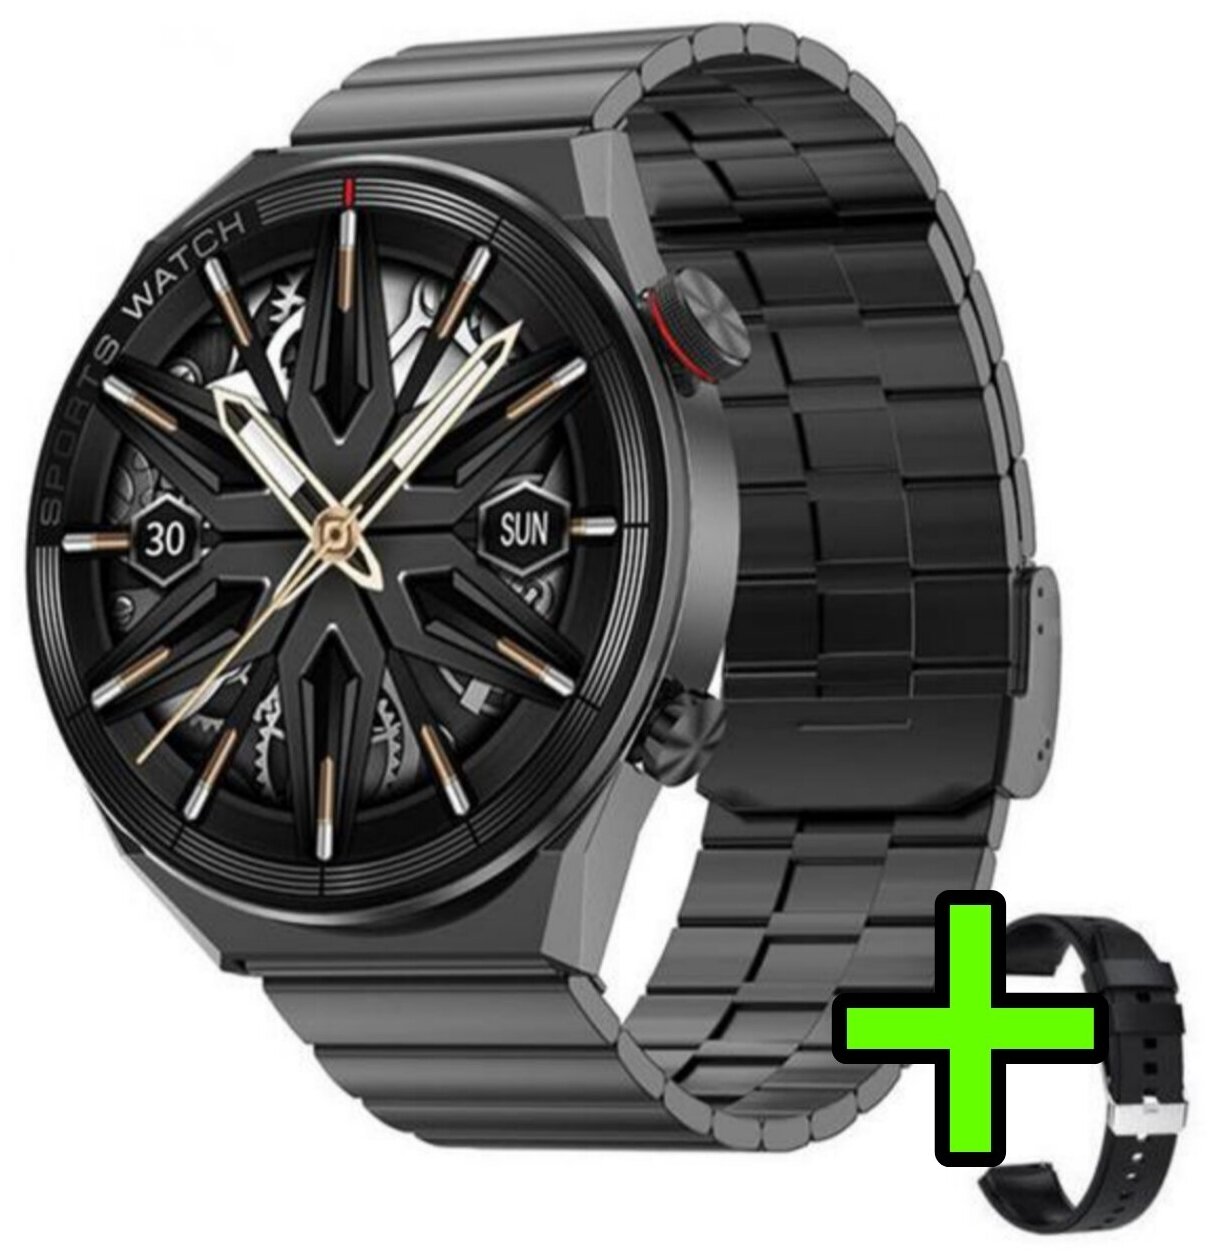 Умные смарт-часы GT3 Max с сенсорным экраном / Черные / Smart Watch 1.5 Экран AMOLED HD / Bluetooth, NFC, GPS, беспроводная зарядка